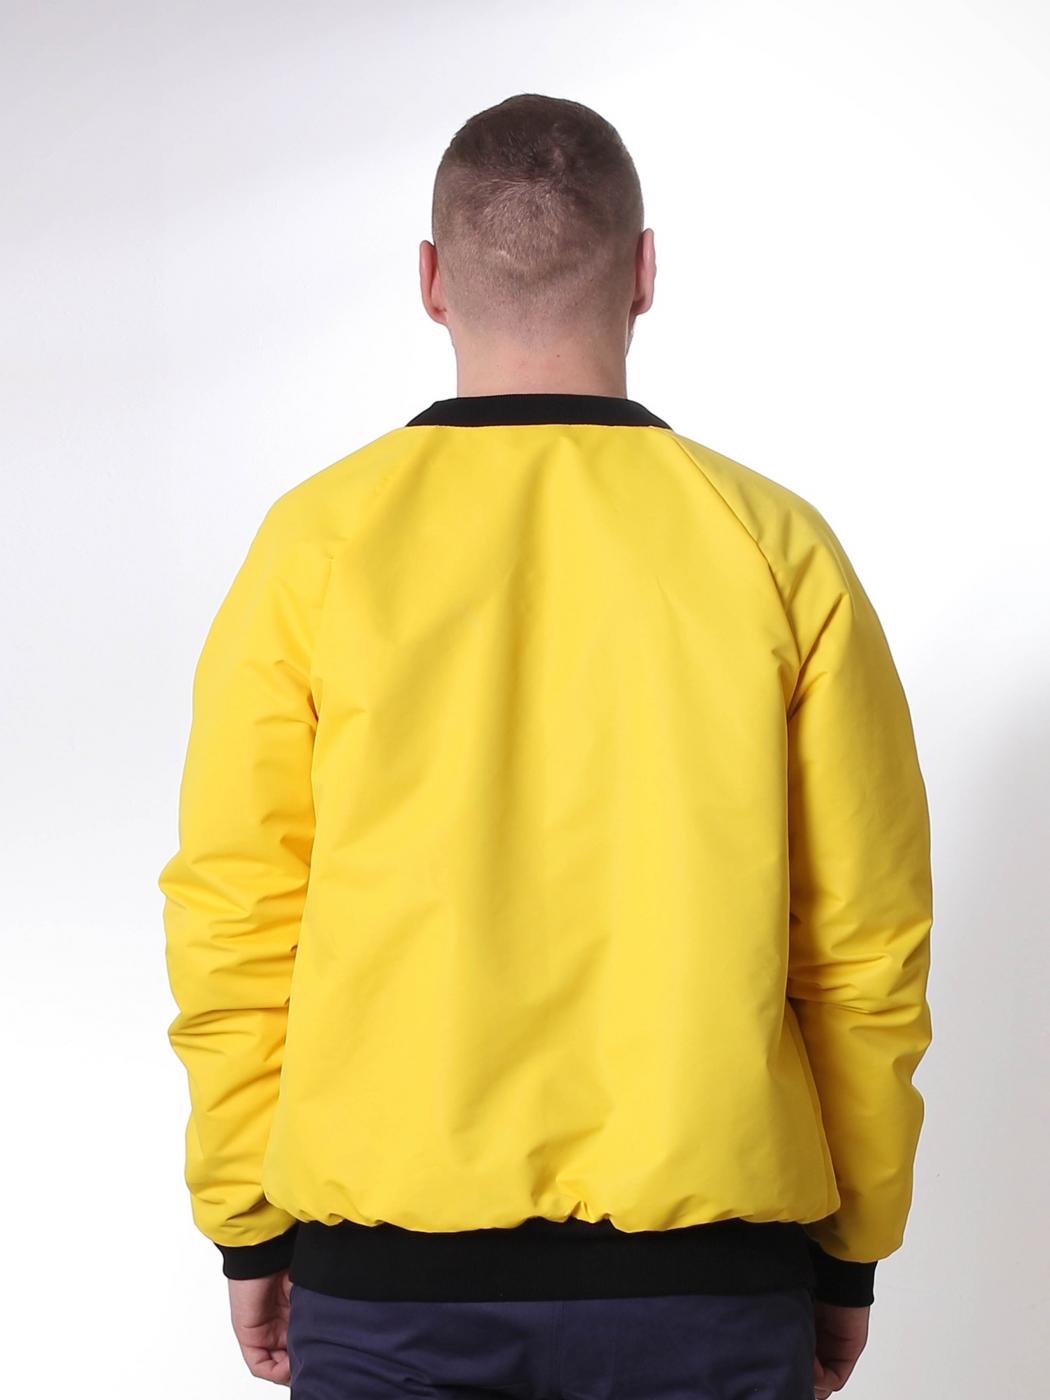 Куртка-бомбер Custom Wear двухсторонний Black/Yellow утеп. Custom Wear - Фото 3